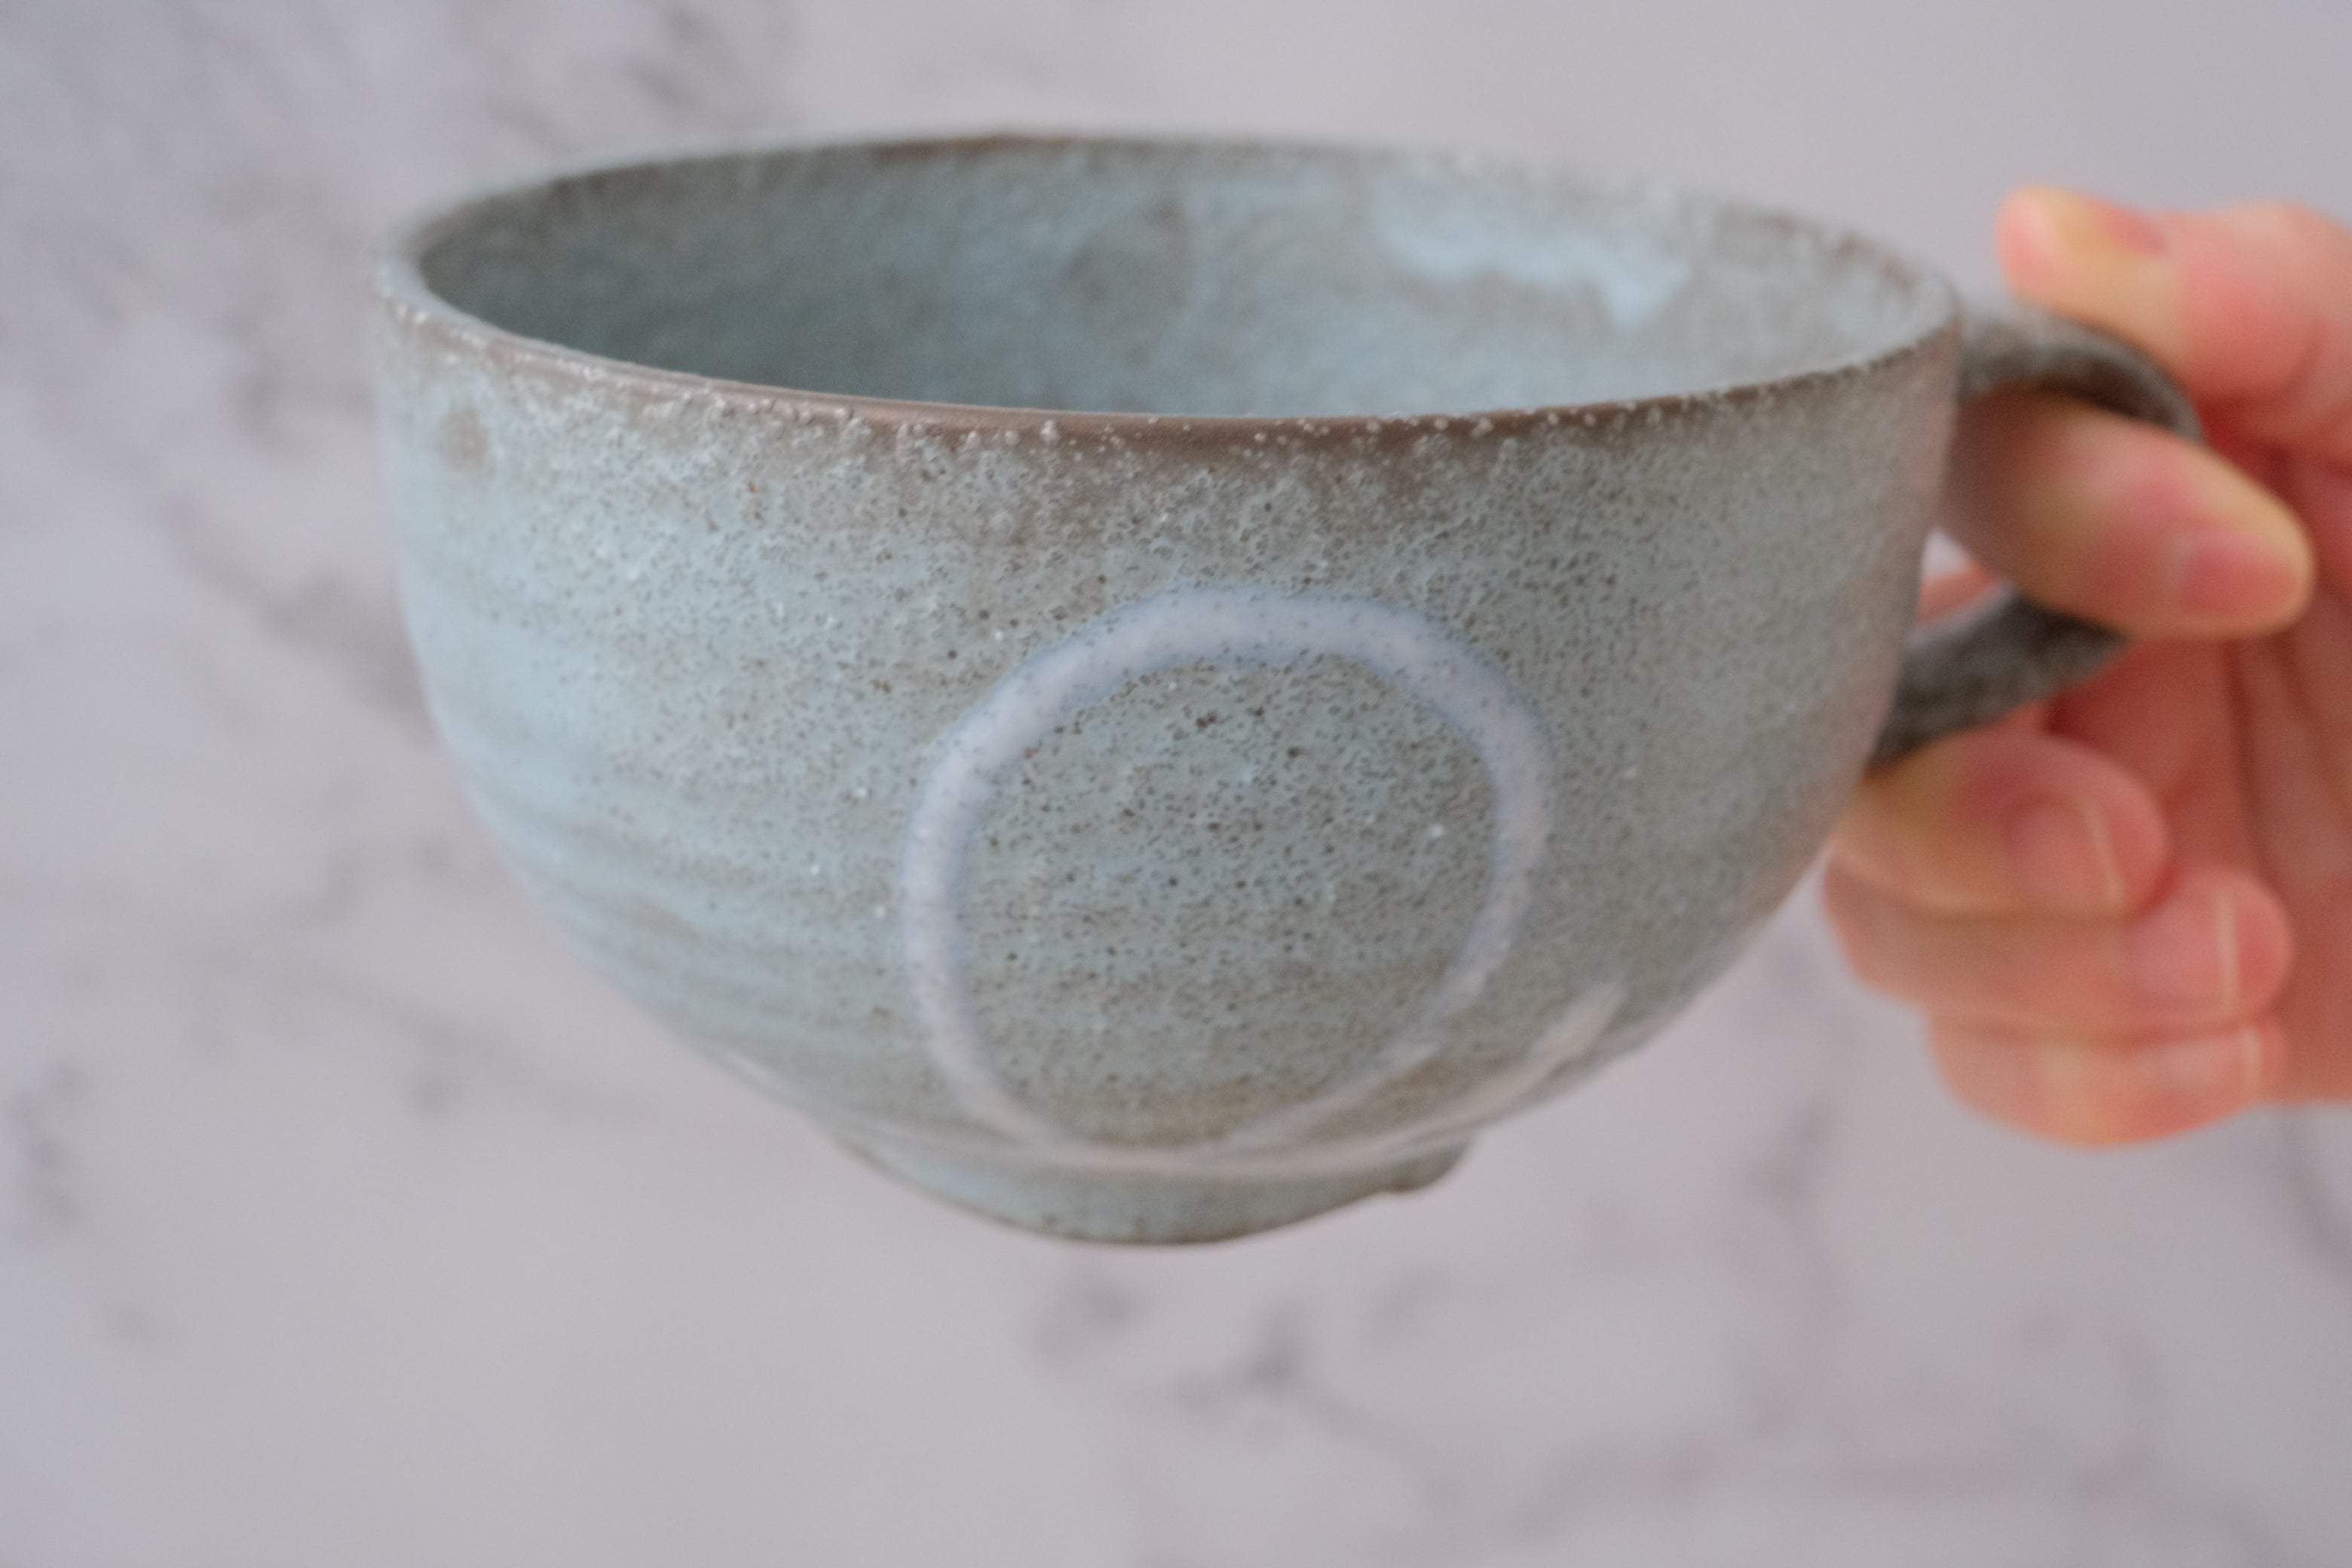 Craft Grace Latte Bowls/ Soup Cups Pair Set